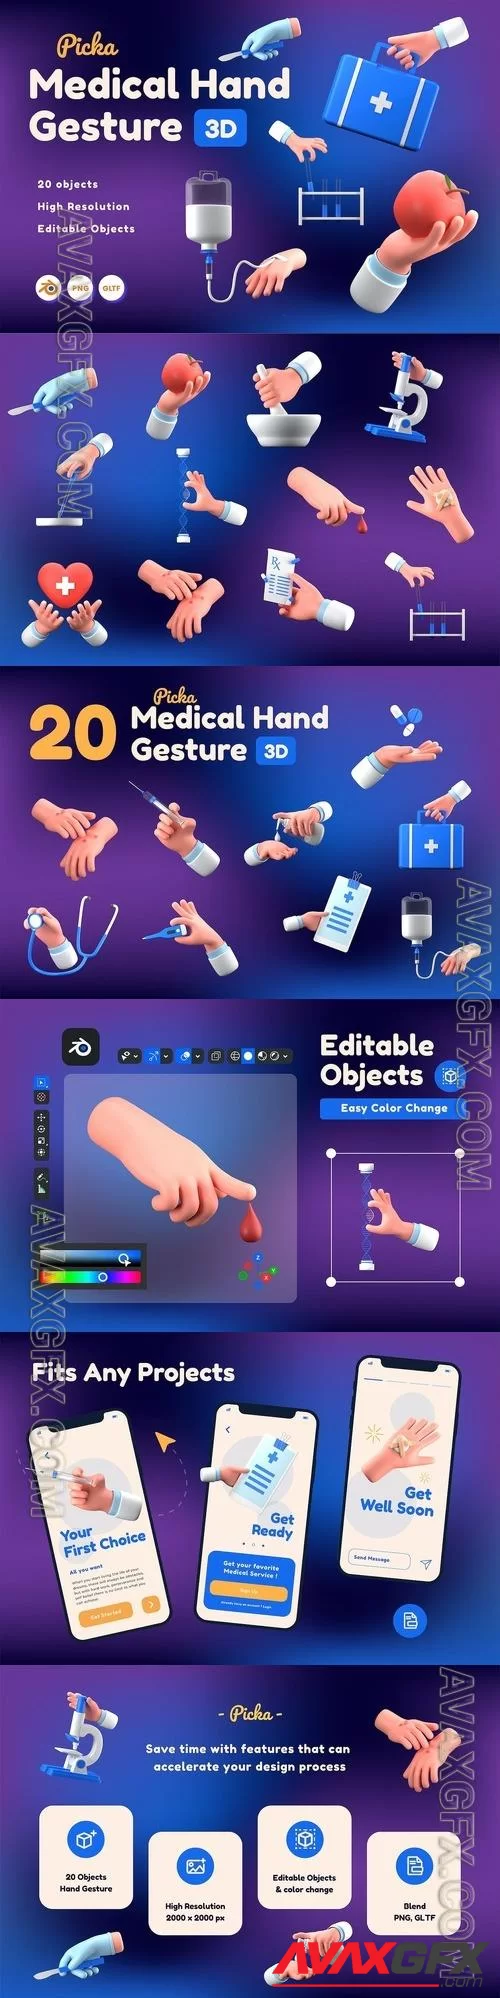 Medical Hand Gesture 3D JQENAN7